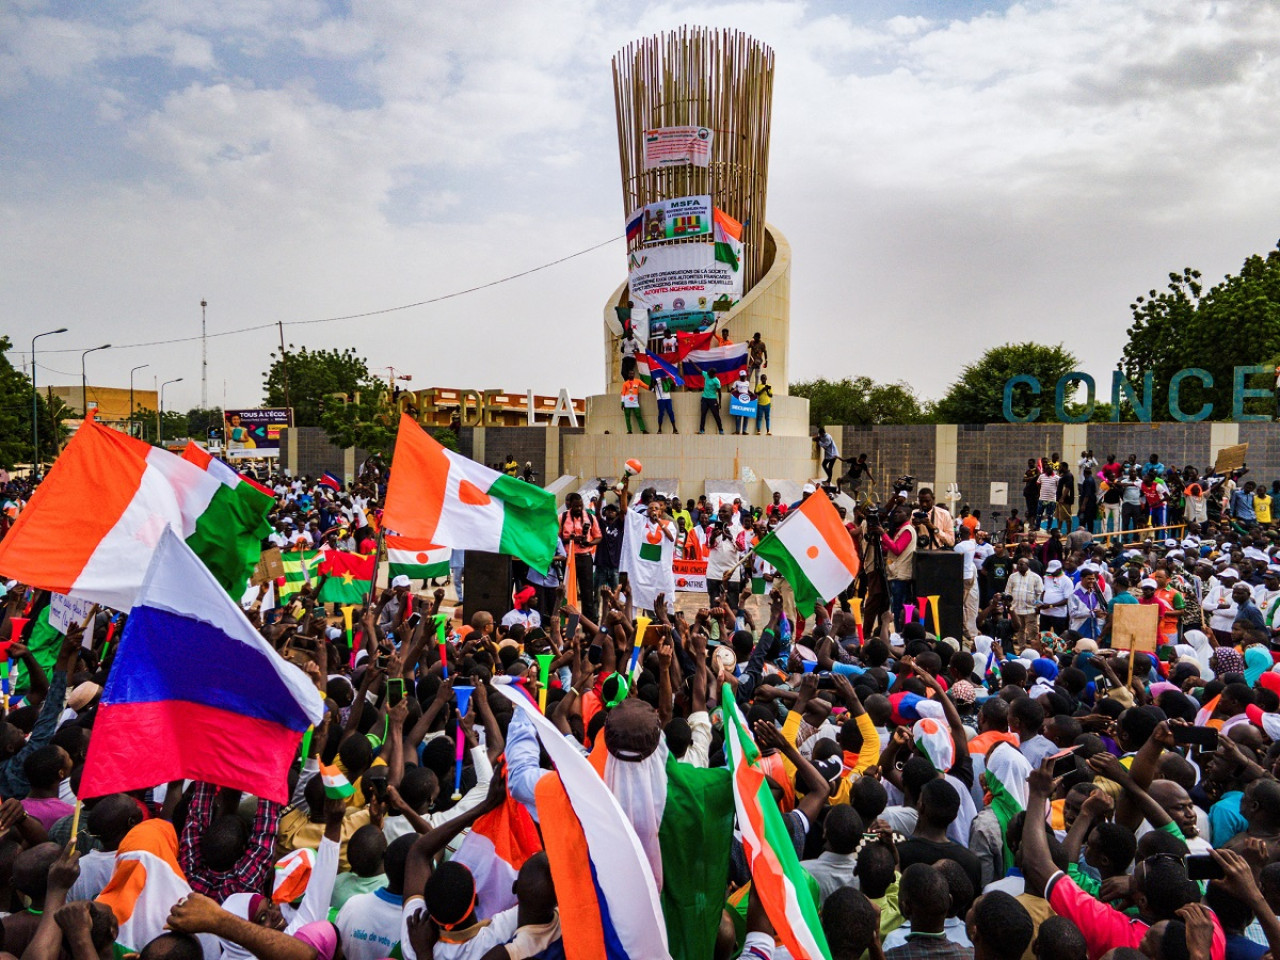 Las banderas de Rusia, Argelia, Guinea Conakri, Burkina Faso y Mali dijeron presente en la manifestación. Foto: Reuters.